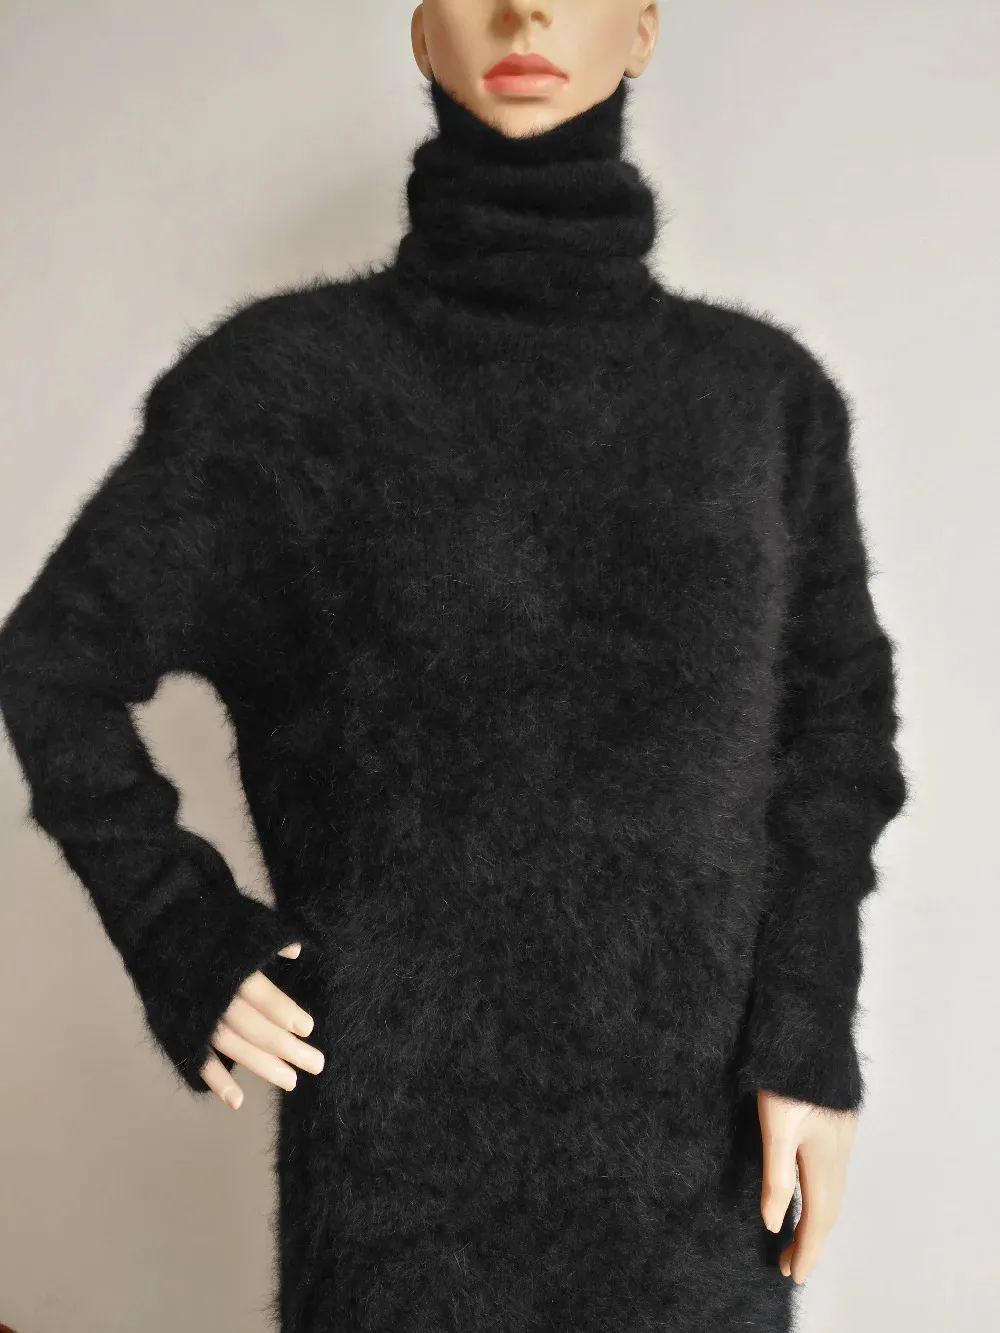 Swetery damskie damskie kaszmirowy Sweter Sweter Sweter długi sukienka Sweter Ladies Turtleeck płaszcz JN461 231023